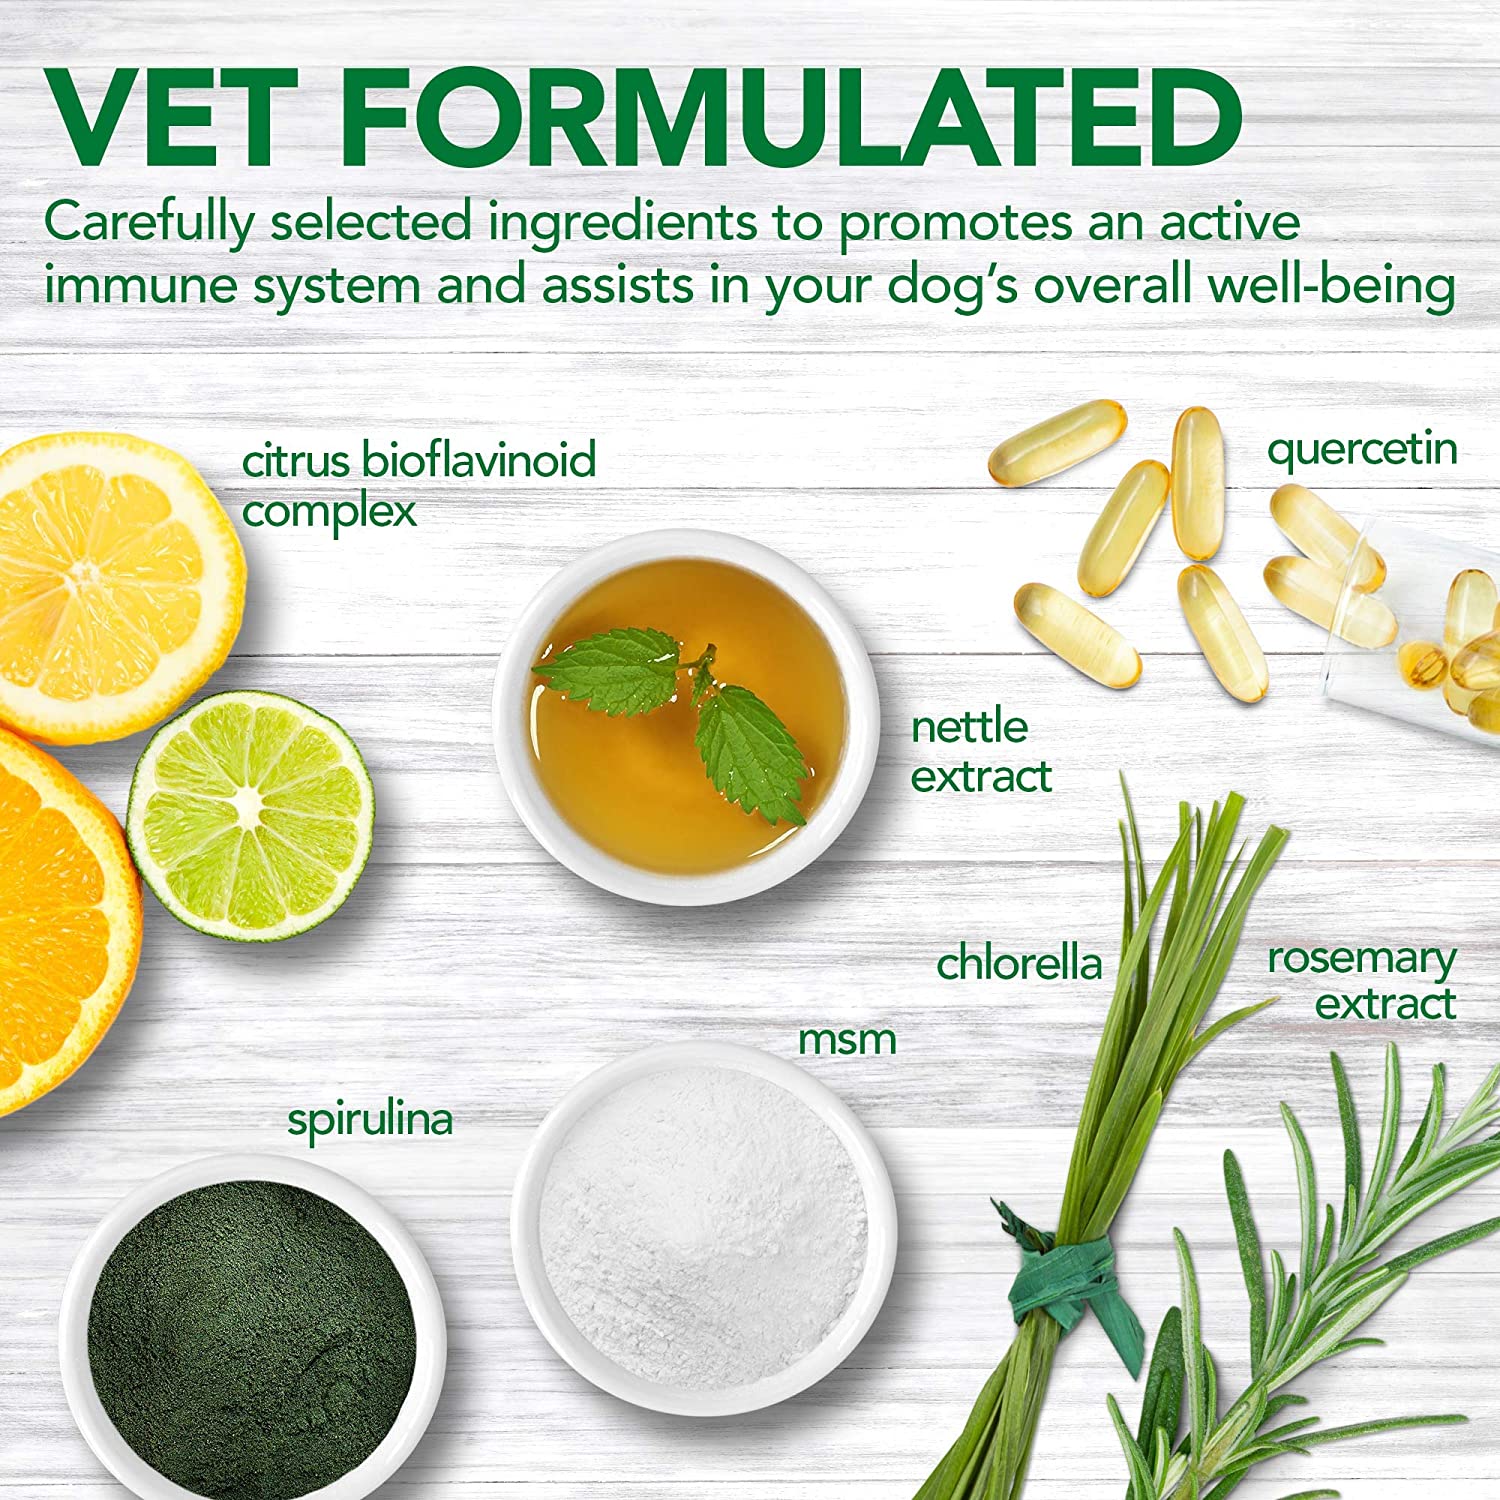  Vet's Best Suplemento inmune de Apoyo para Perros promueve el Sistema inmunológico Saludable y el Alivio de la alergia estacional 60 Unidades 180 g 